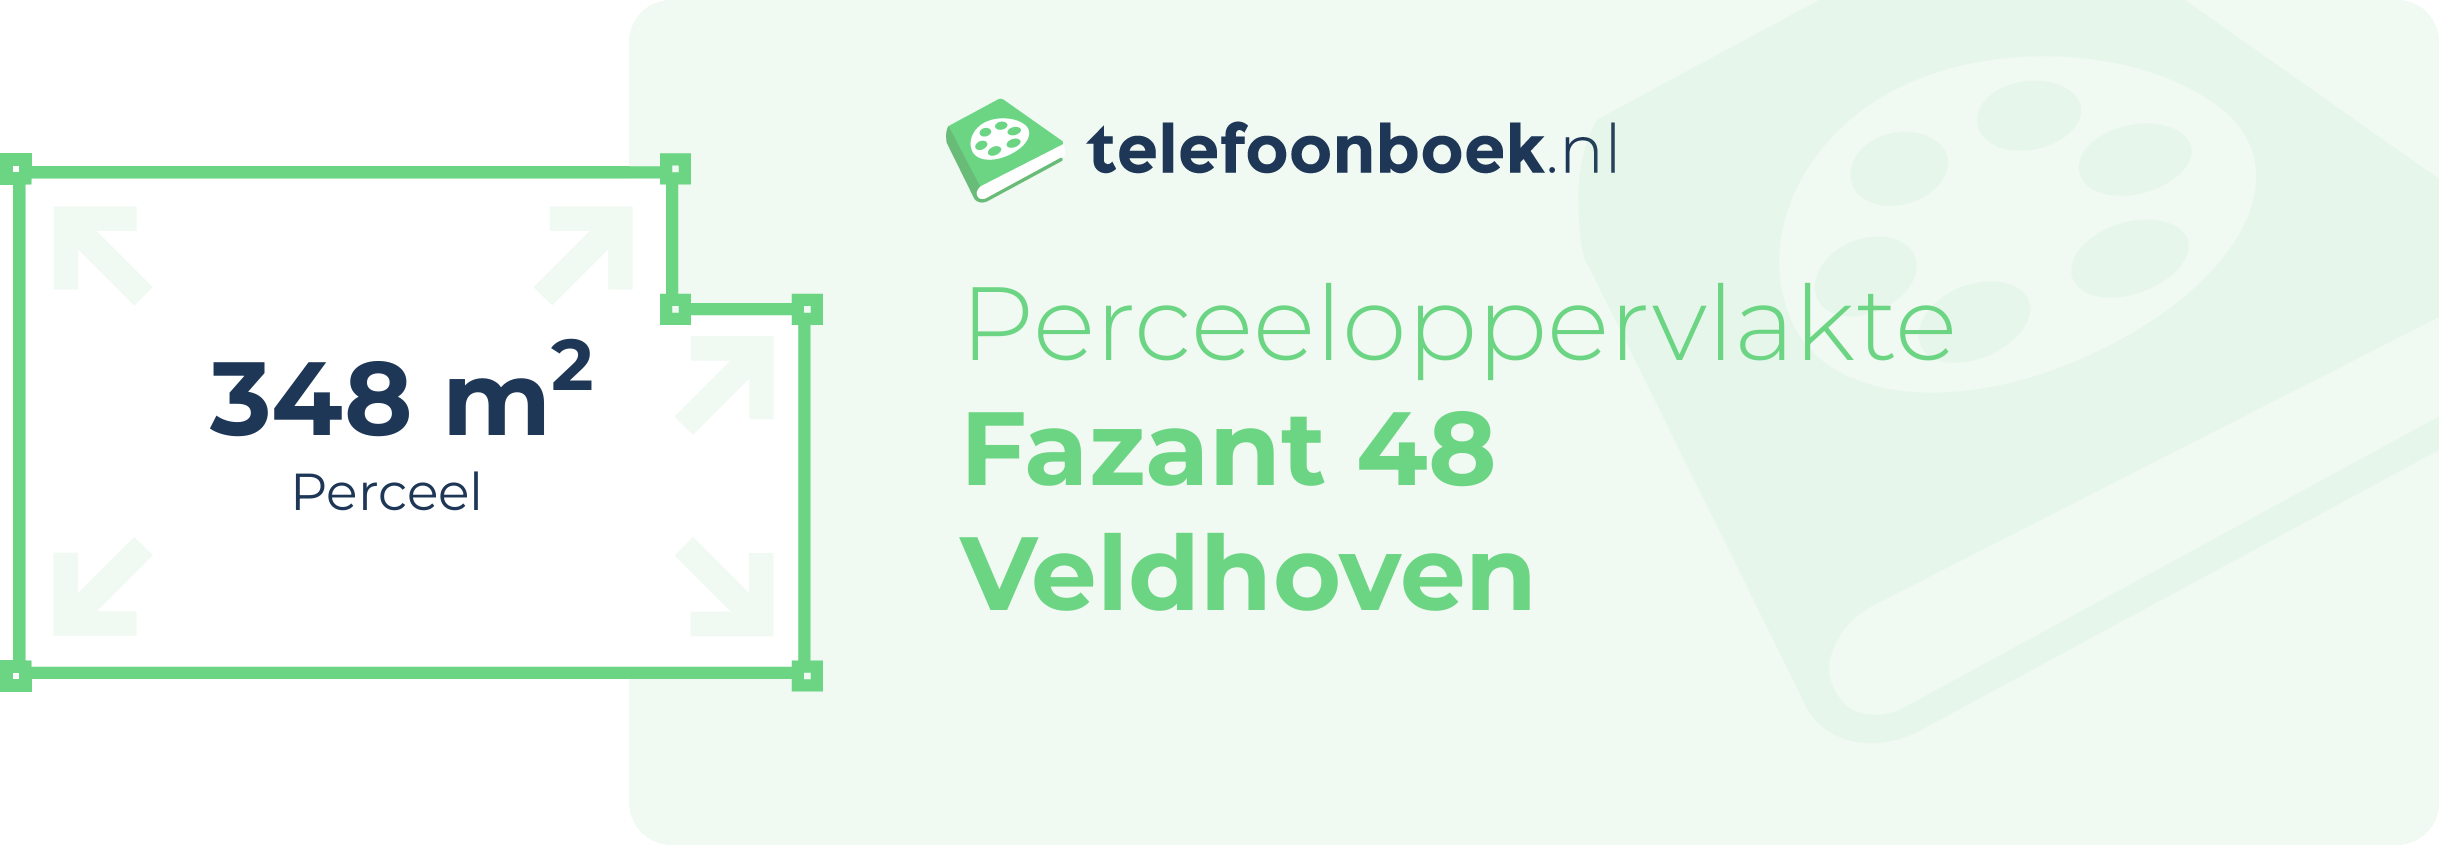 Perceeloppervlakte Fazant 48 Veldhoven